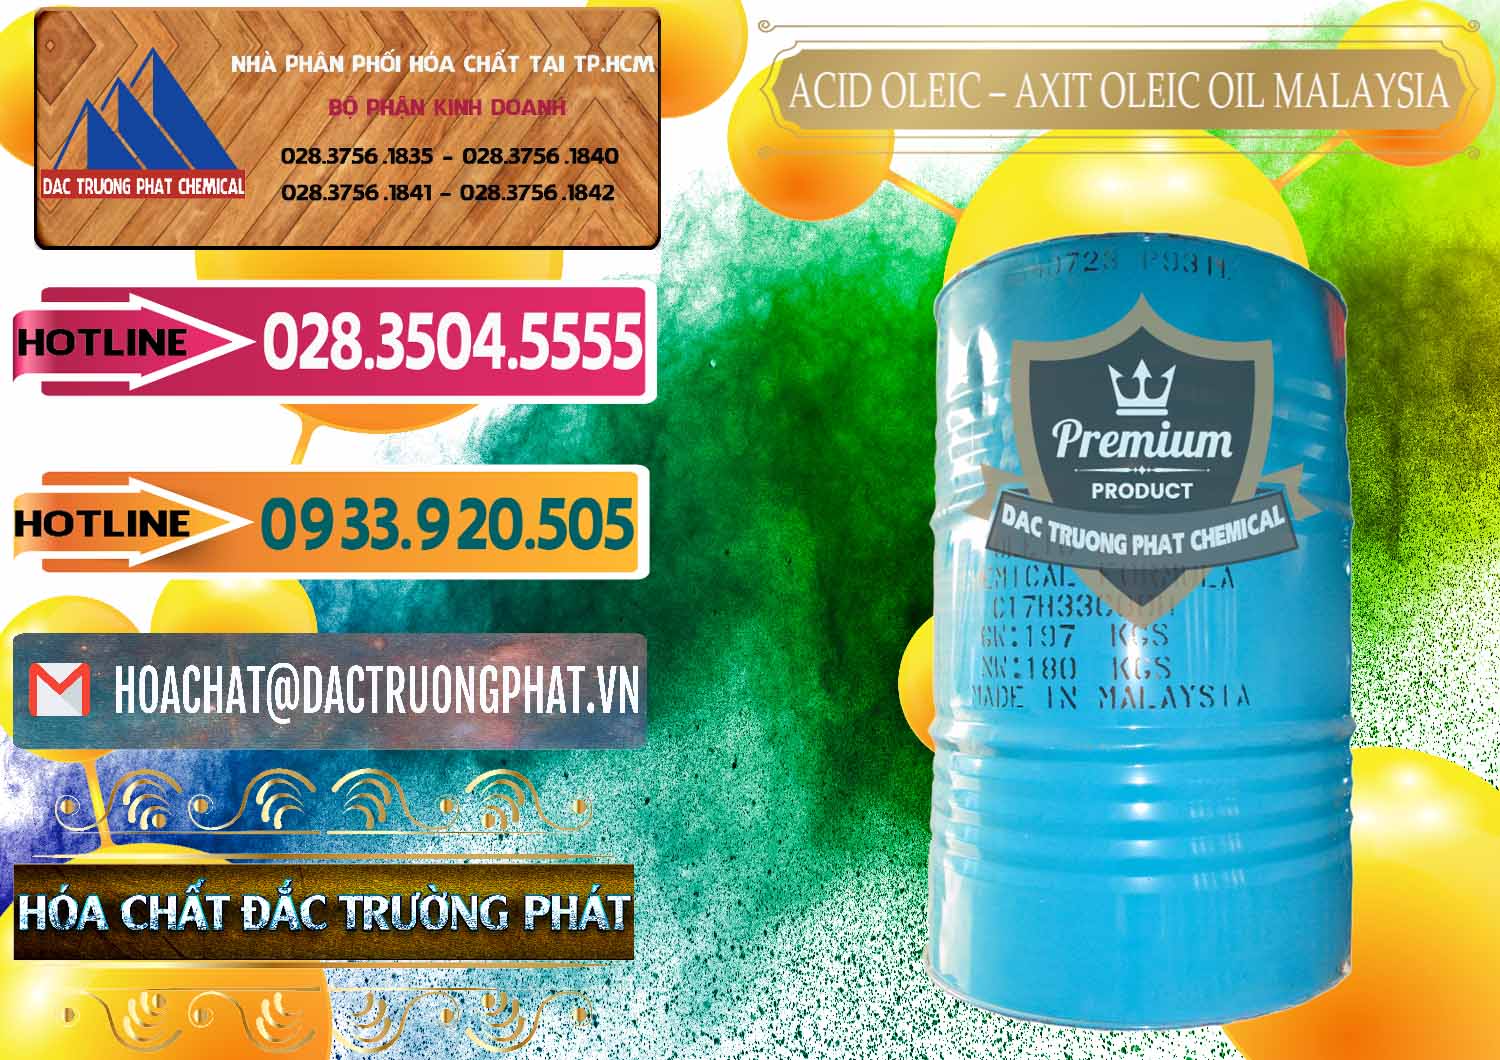 Nơi cung ứng & bán Acid Oleic – Axit Oleic Oil Malaysia - 0013 - Công ty phân phối _ cung cấp hóa chất tại TP.HCM - dactruongphat.vn